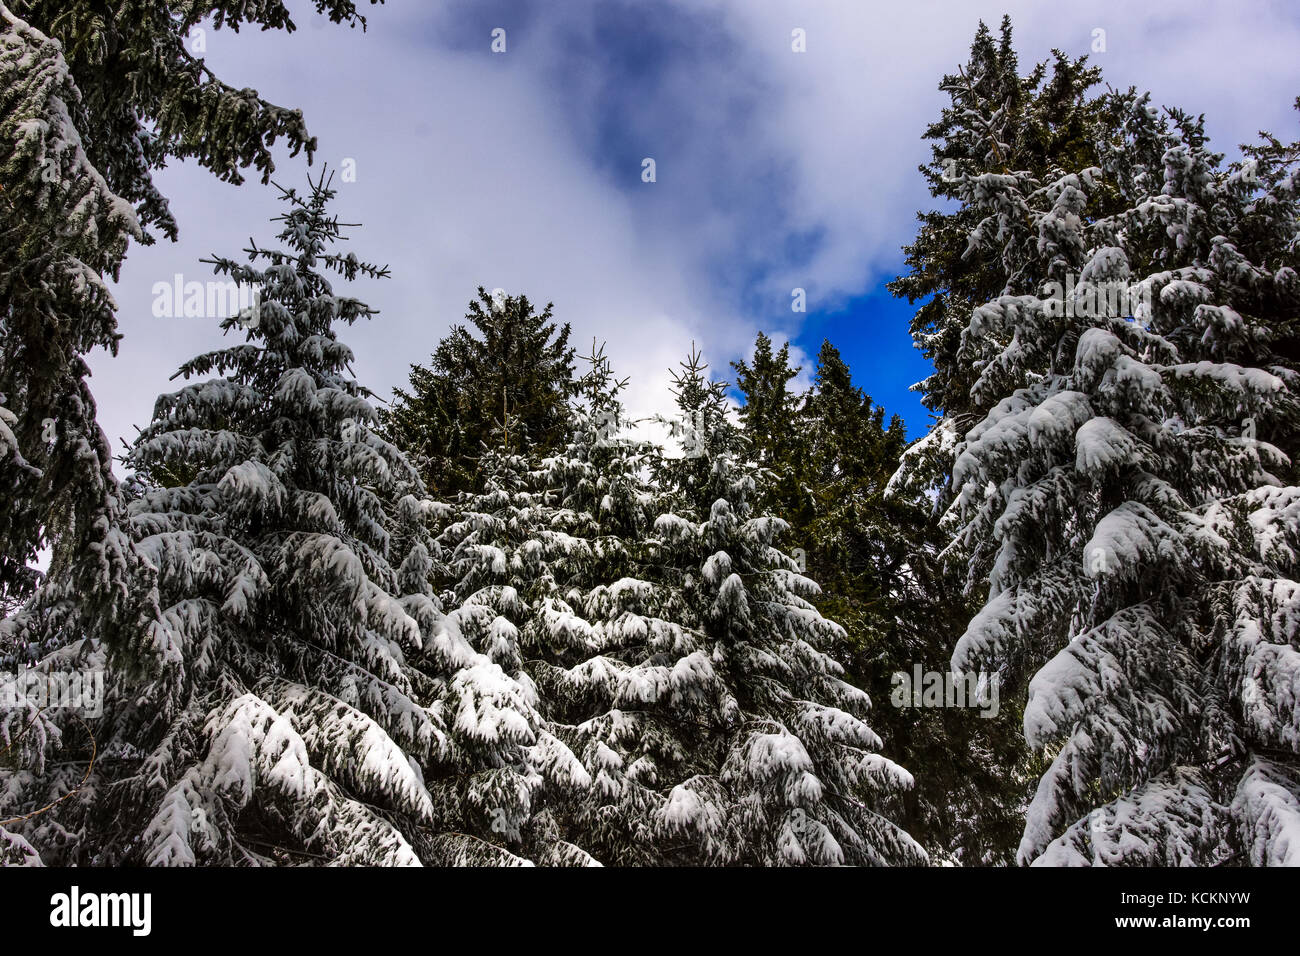 Winter-Eindruck-Farbbild genommen in einem Wald mit Schnee auf den Bäumen an einem sonnigen Tag mit blauem Himmel und Wolken Stockfoto